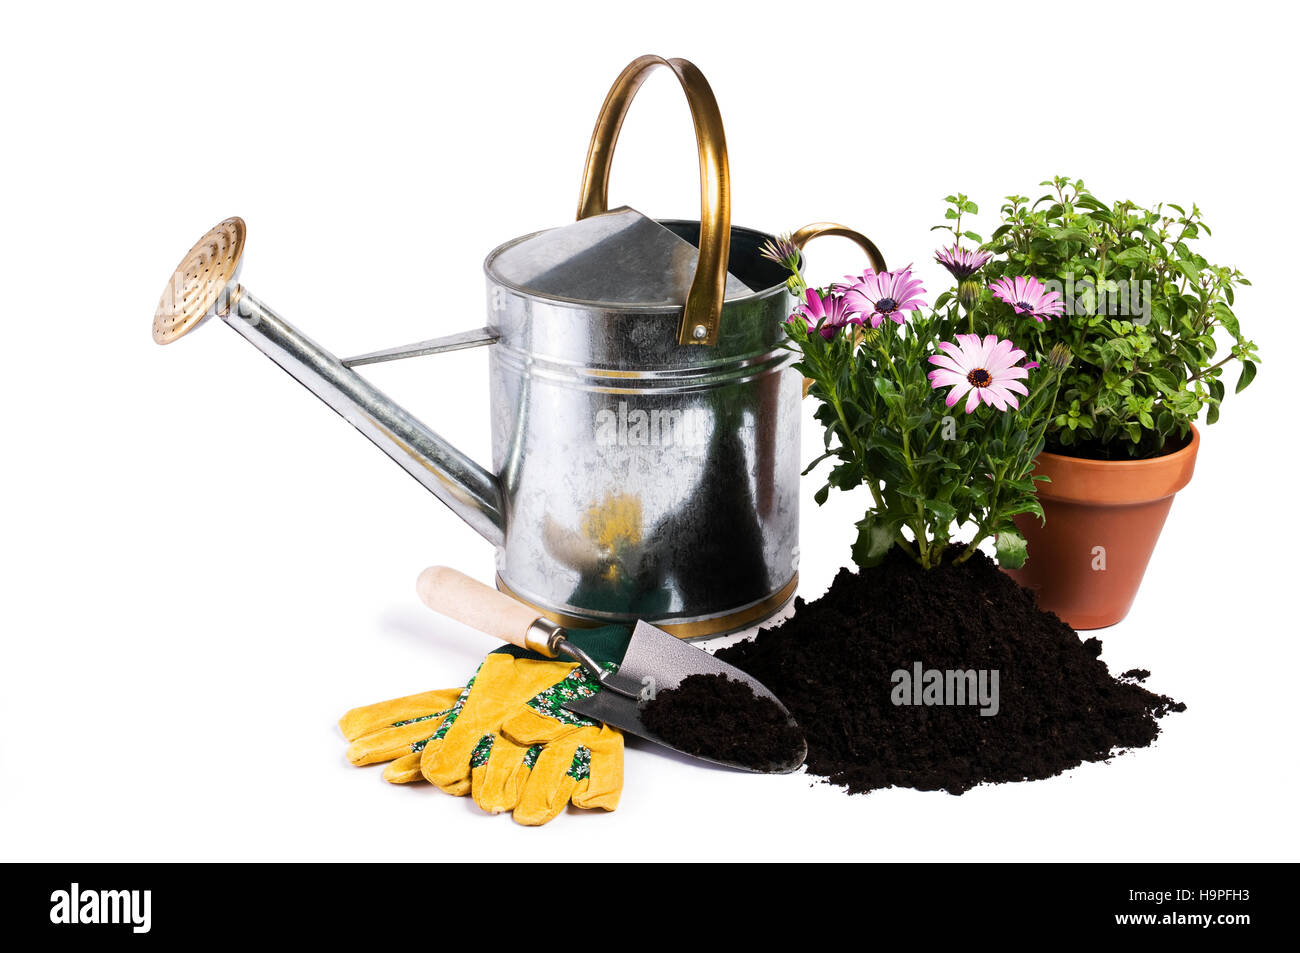 Arrosoir avec fleur et isolés d'outils de jardinage Banque D'Images